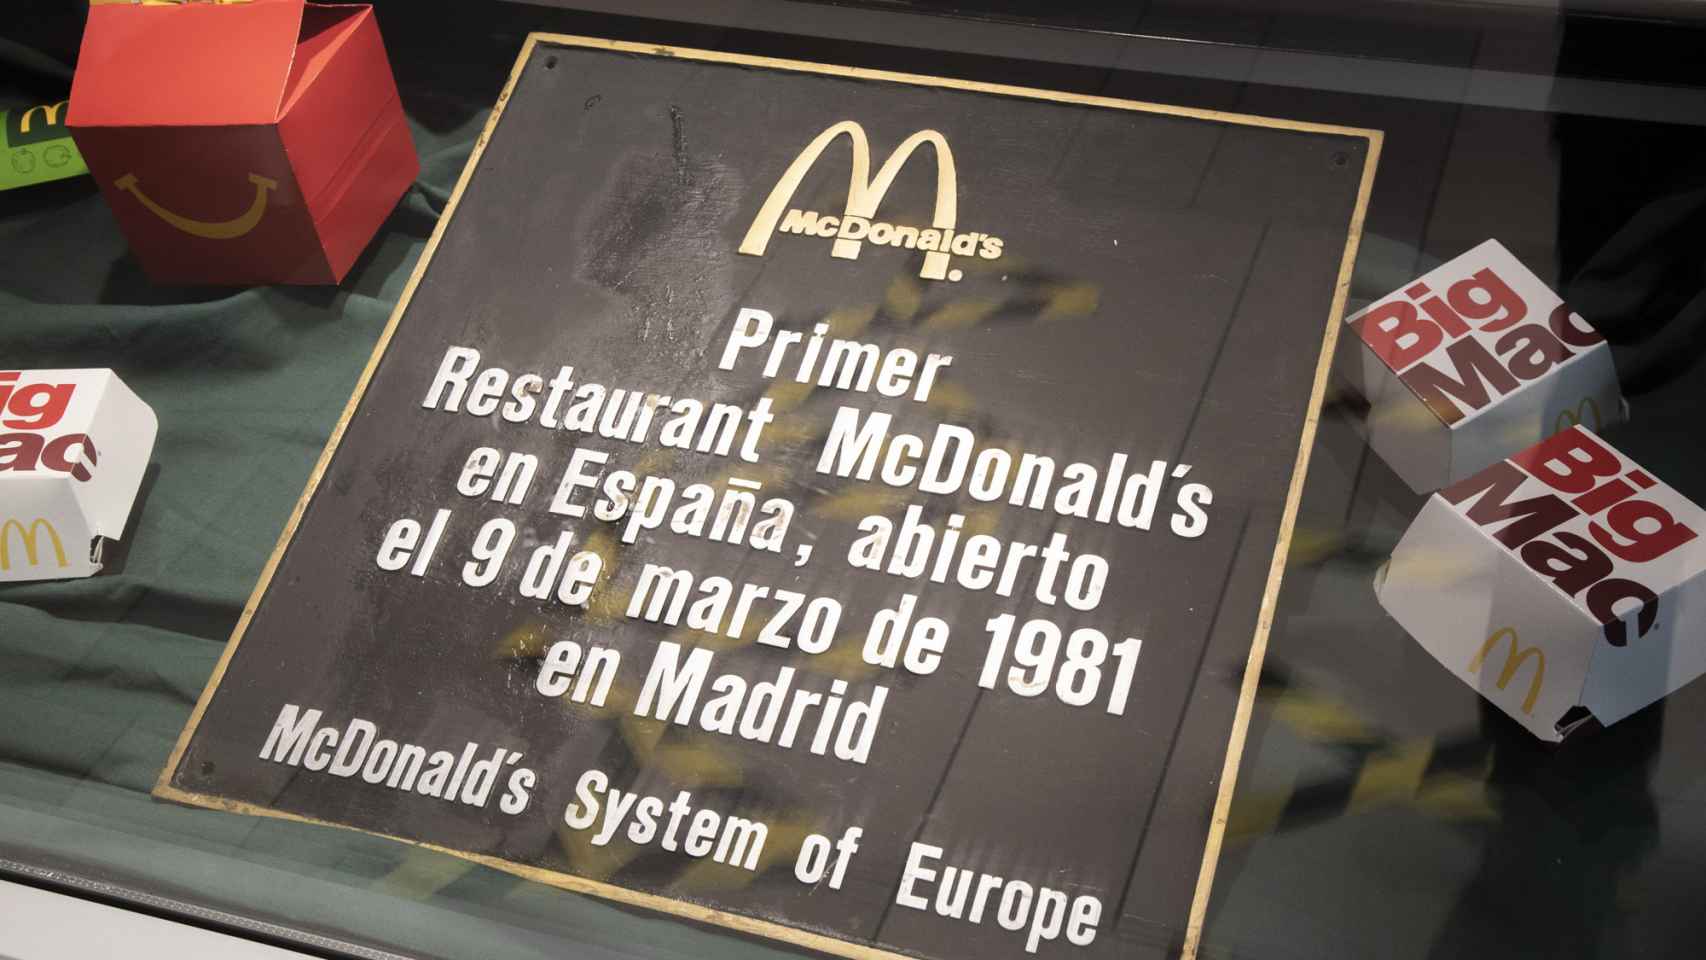 El 9 de marzo de 2021, McDonald's ha cumplido 40 años en España.